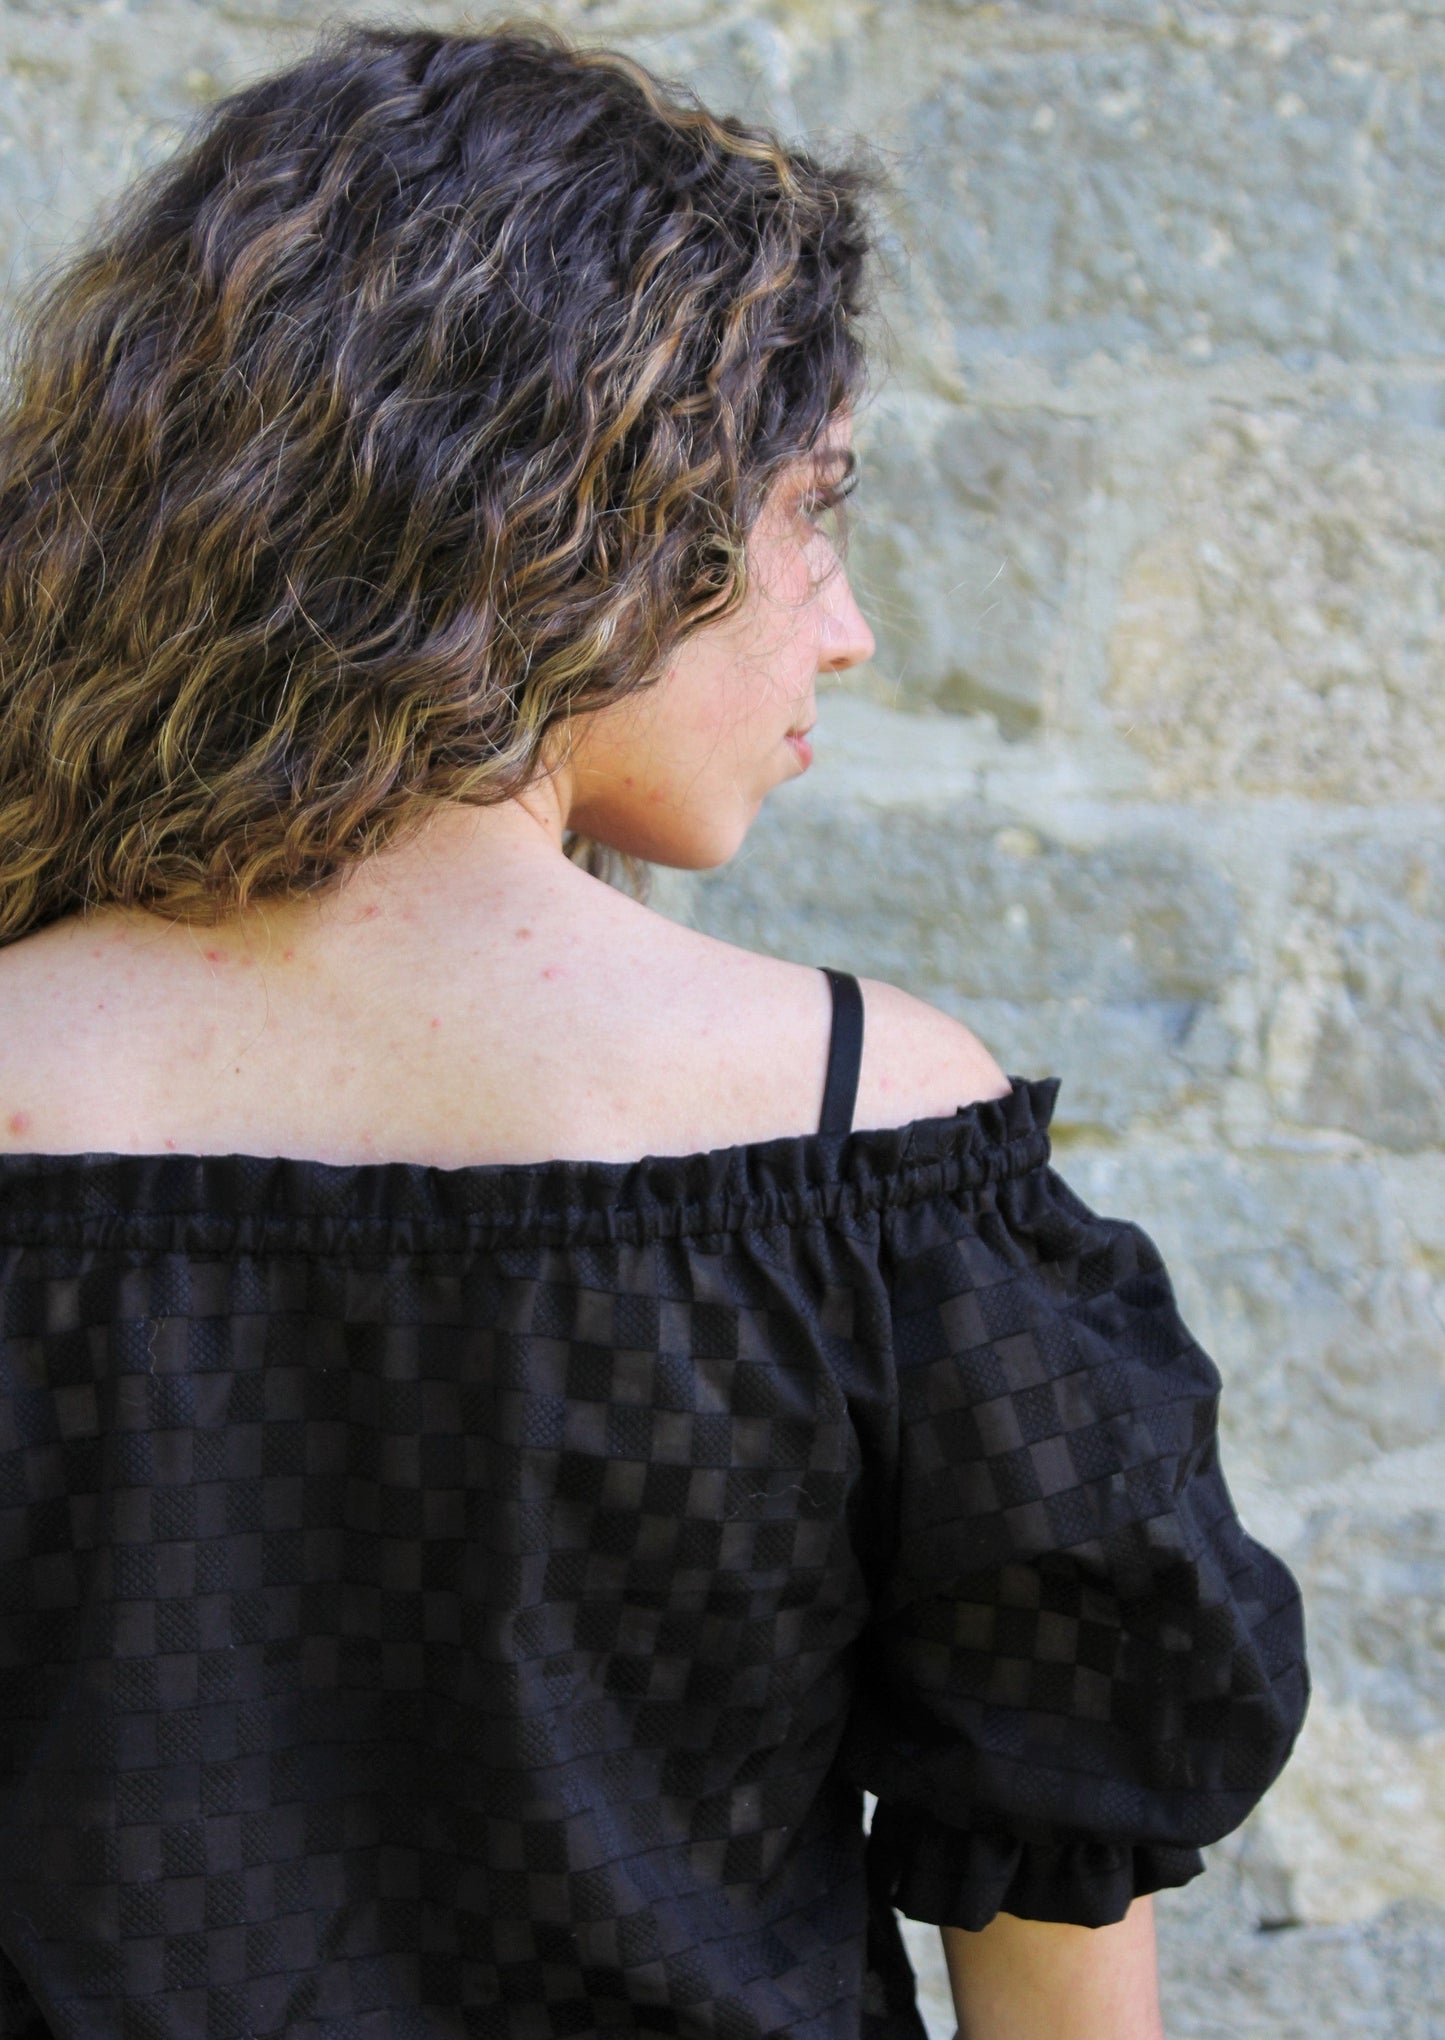 Renaissance chemise blouse off the shoulder